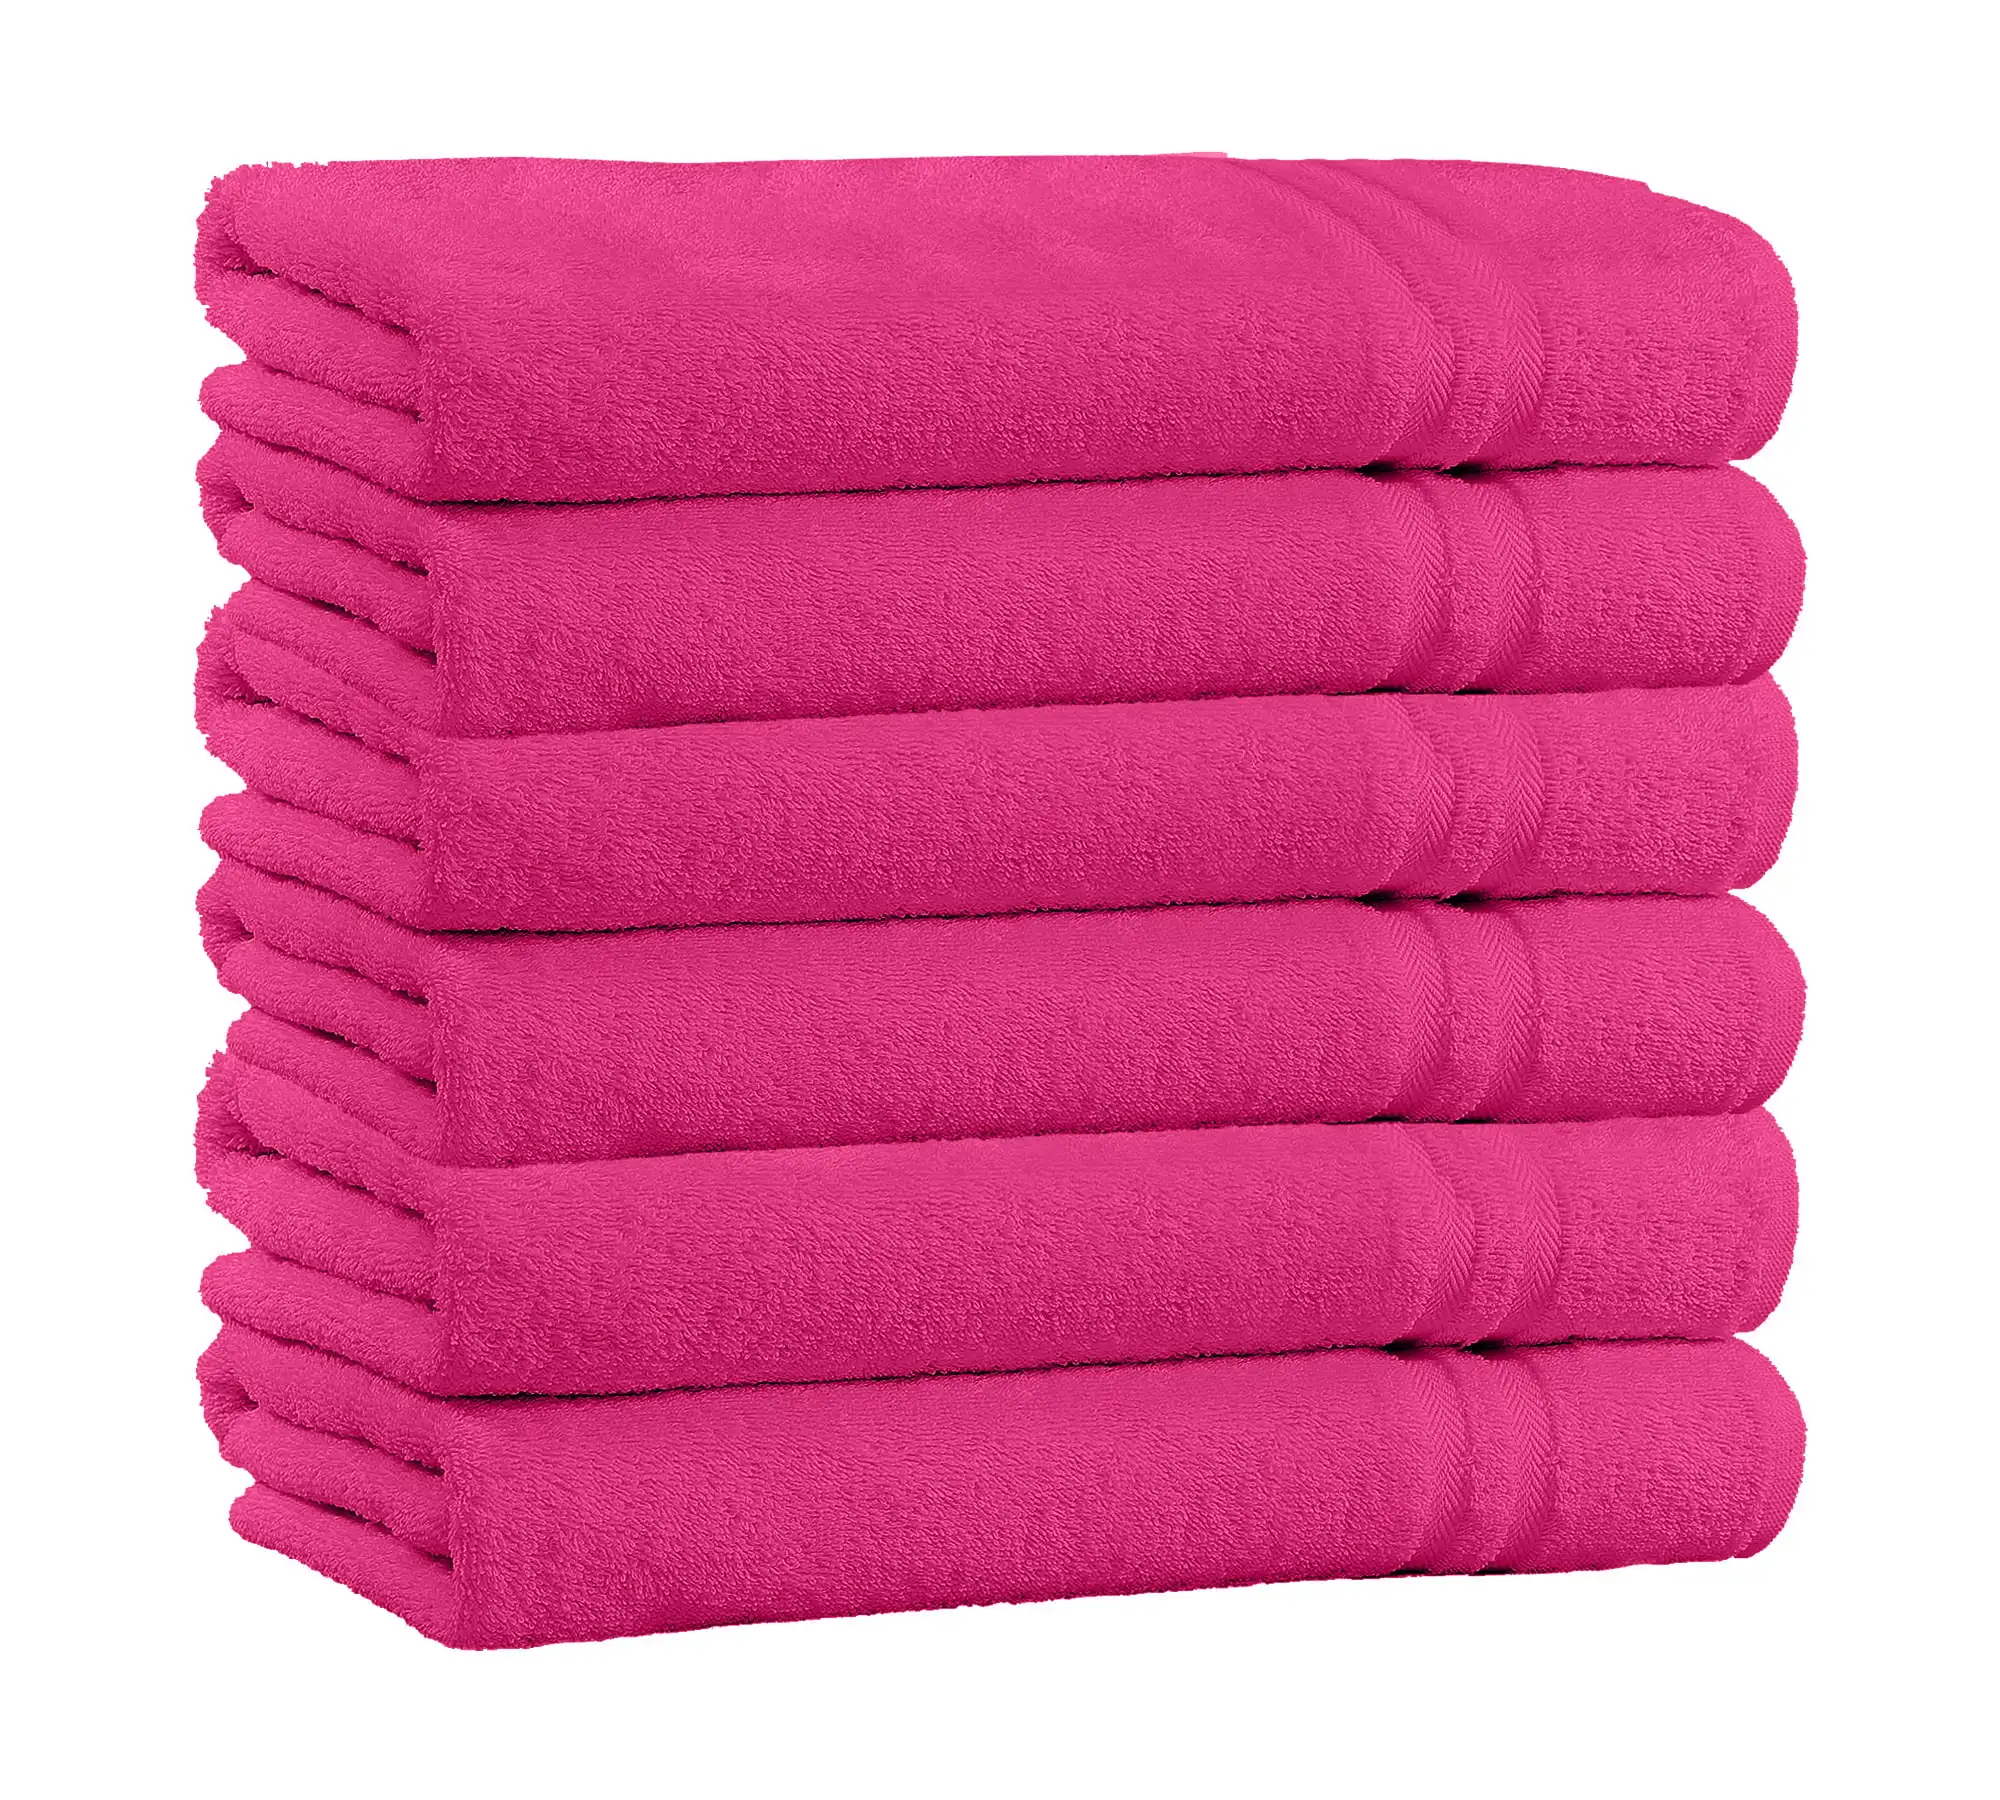 

Хлопковые наборы банных полотенец в 4 упаковках, дополнительные плюшевые и впитывающие банные полотенца повышенного размера 54x27 (в ассортименте), банные полотенца для лица, моющиеся